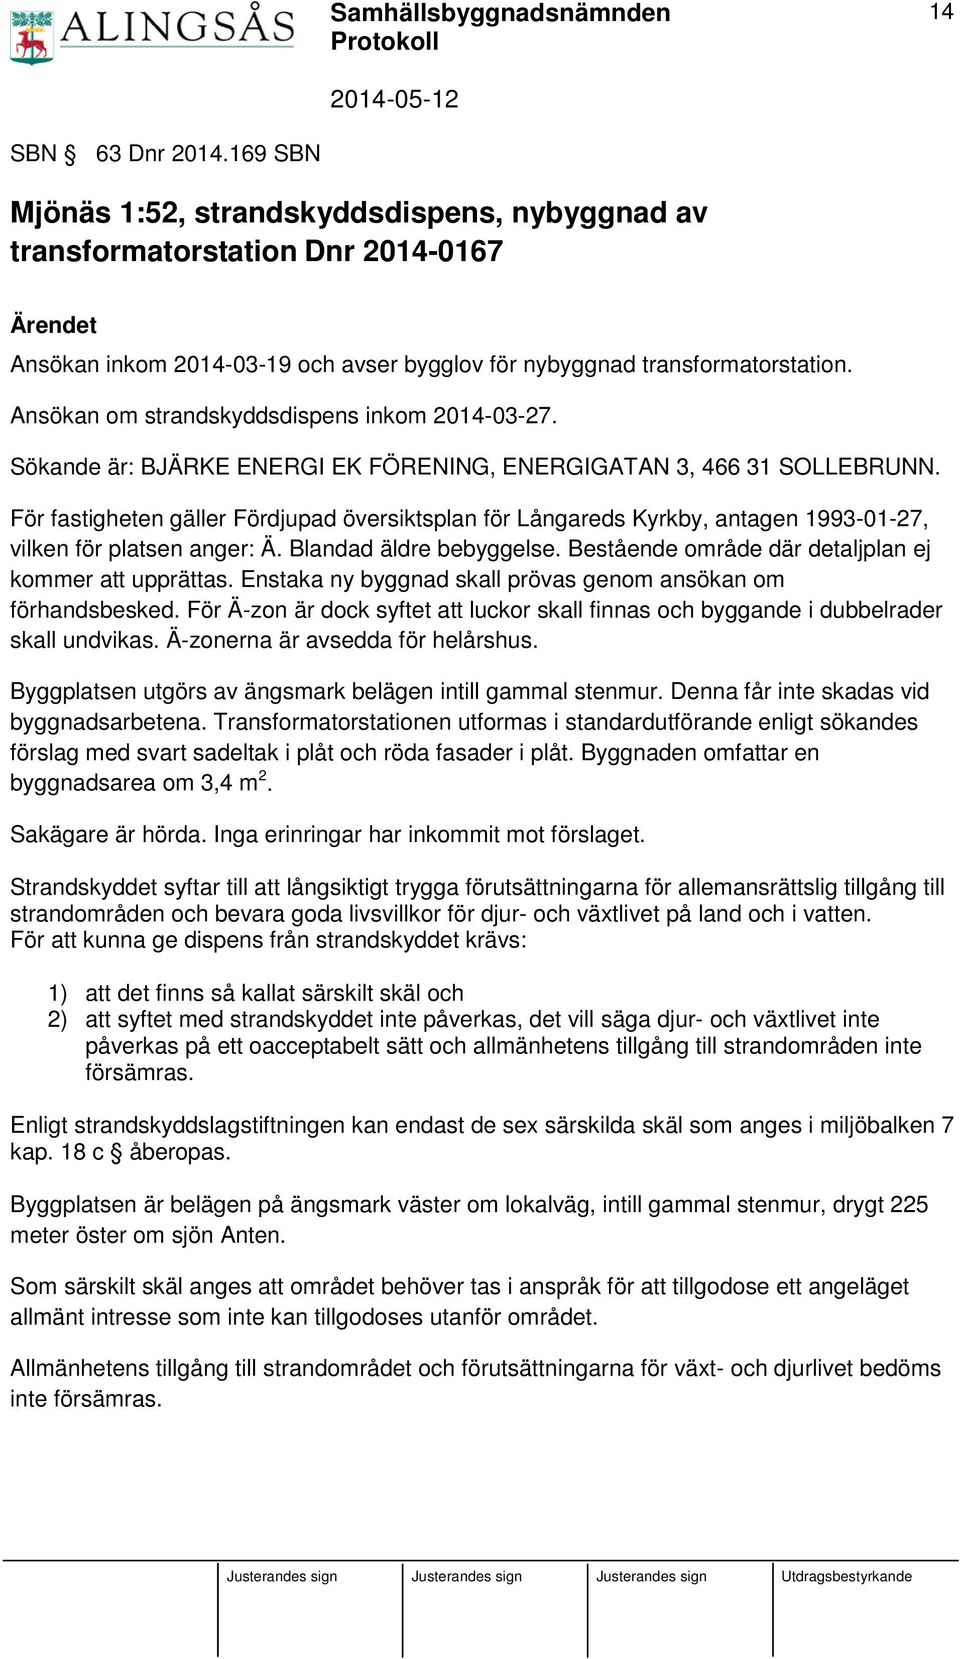 För fastigheten gäller Fördjupad översiktsplan för Långareds Kyrkby, antagen 1993-01-27, vilken för platsen anger: Ä. Blandad äldre bebyggelse. Bestående område där detaljplan ej kommer att upprättas.